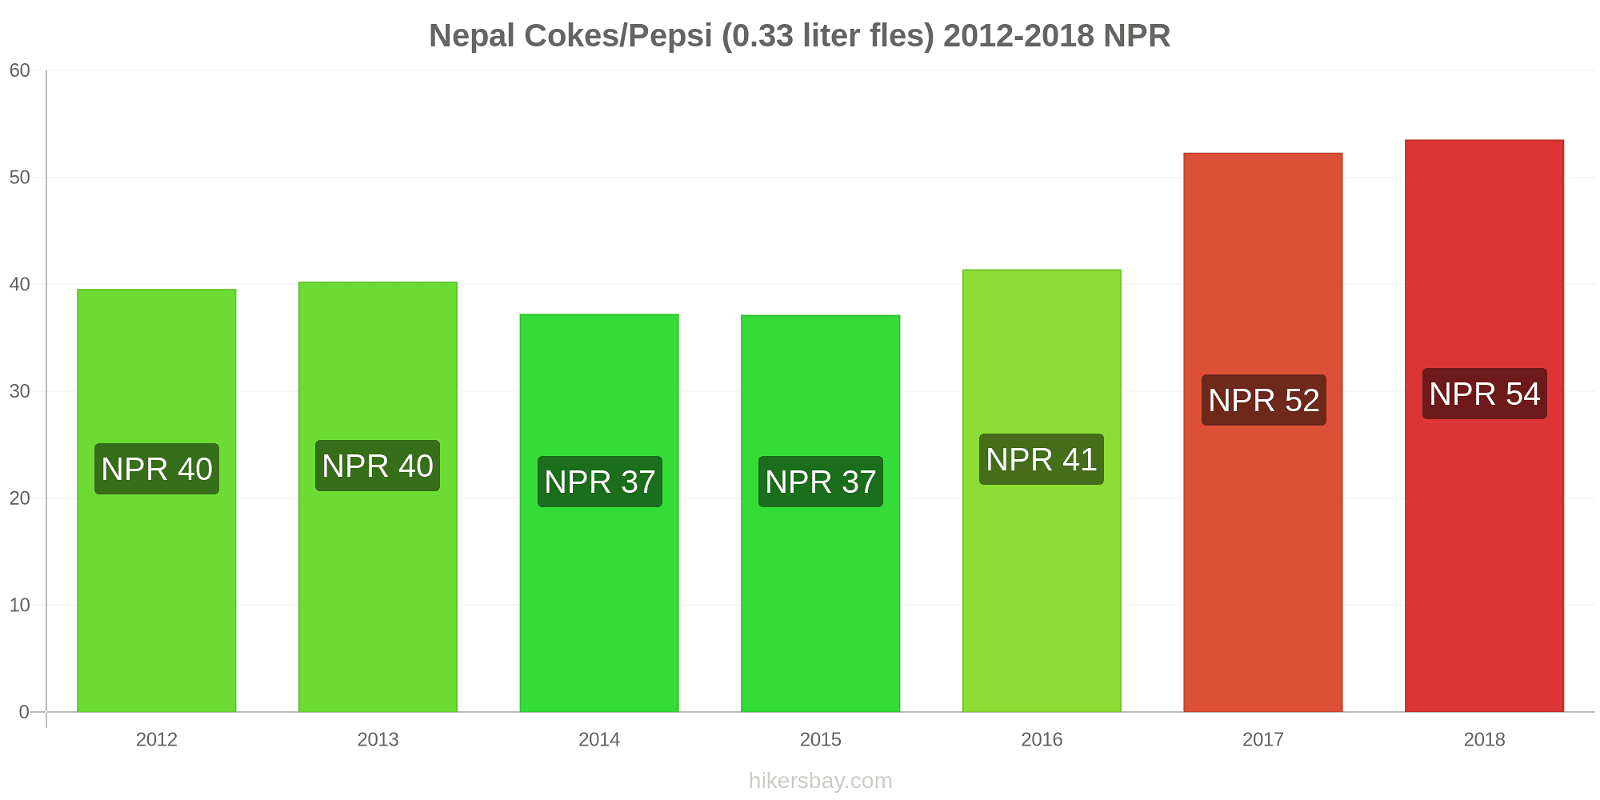 Nepal prijswijzigingen Coca-Cola/Pepsi (0.33 liter fles) hikersbay.com